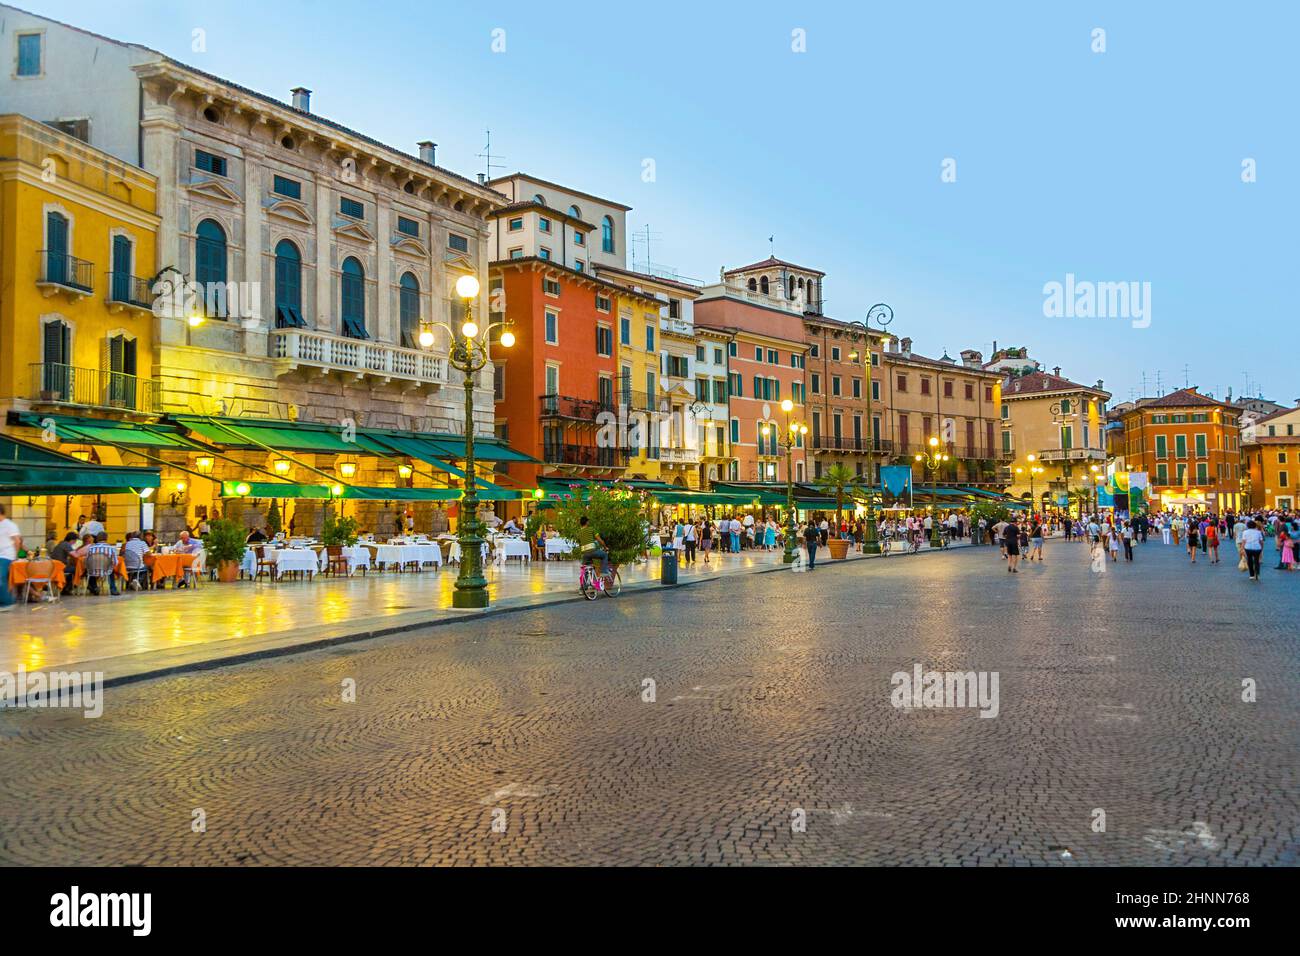 Piazza Bra en Verona al atardecer con restaurantes abiertos Foto de stock